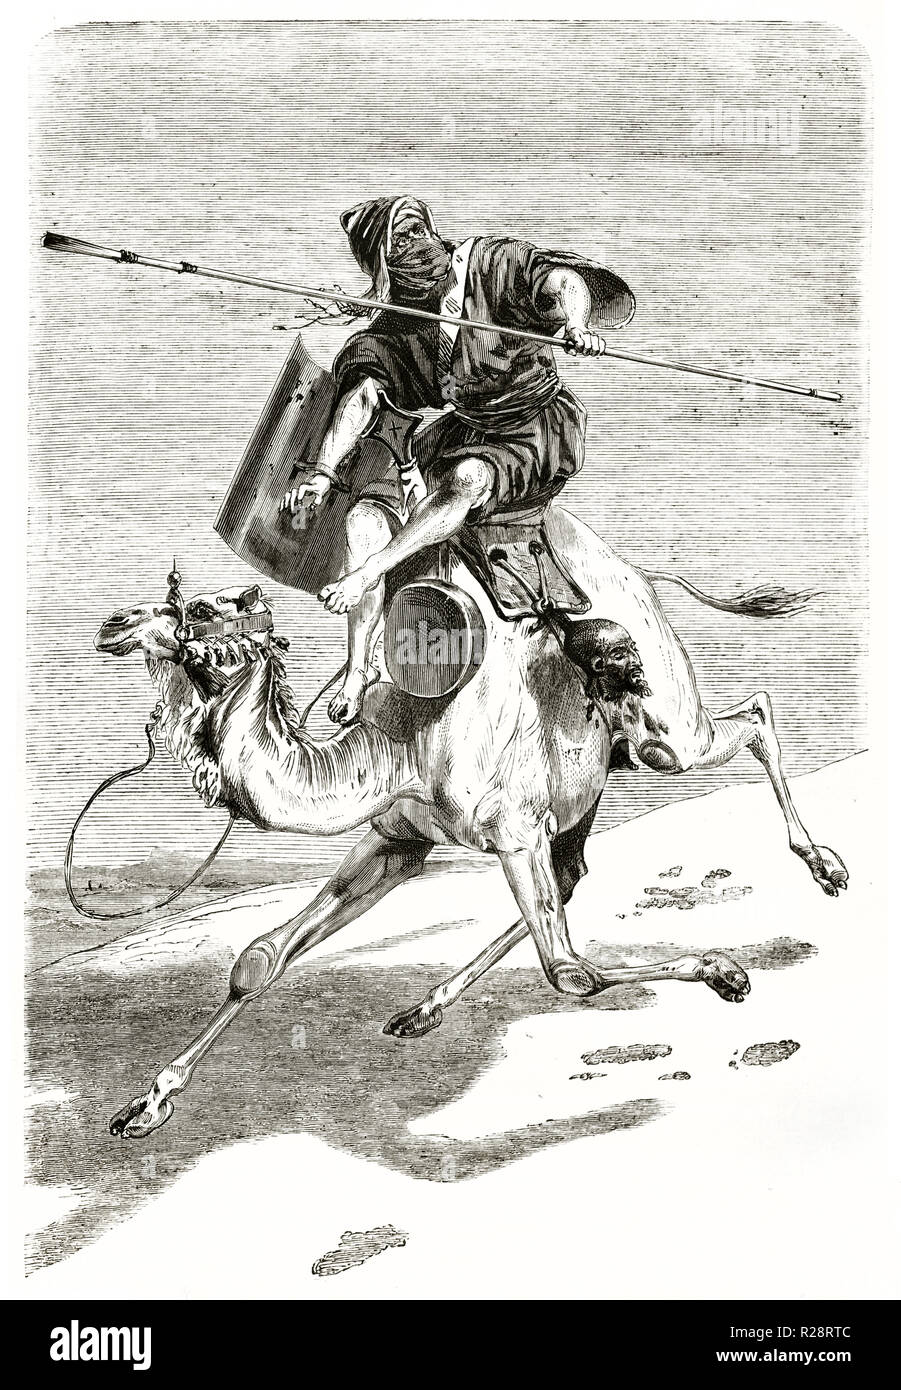 Illustration d'un vieux guerrier touareg dos de chameaux, de l'Algérie. Par Couverchel, publ. sur le Tour du Monde, Paris, 18631863 Banque D'Images